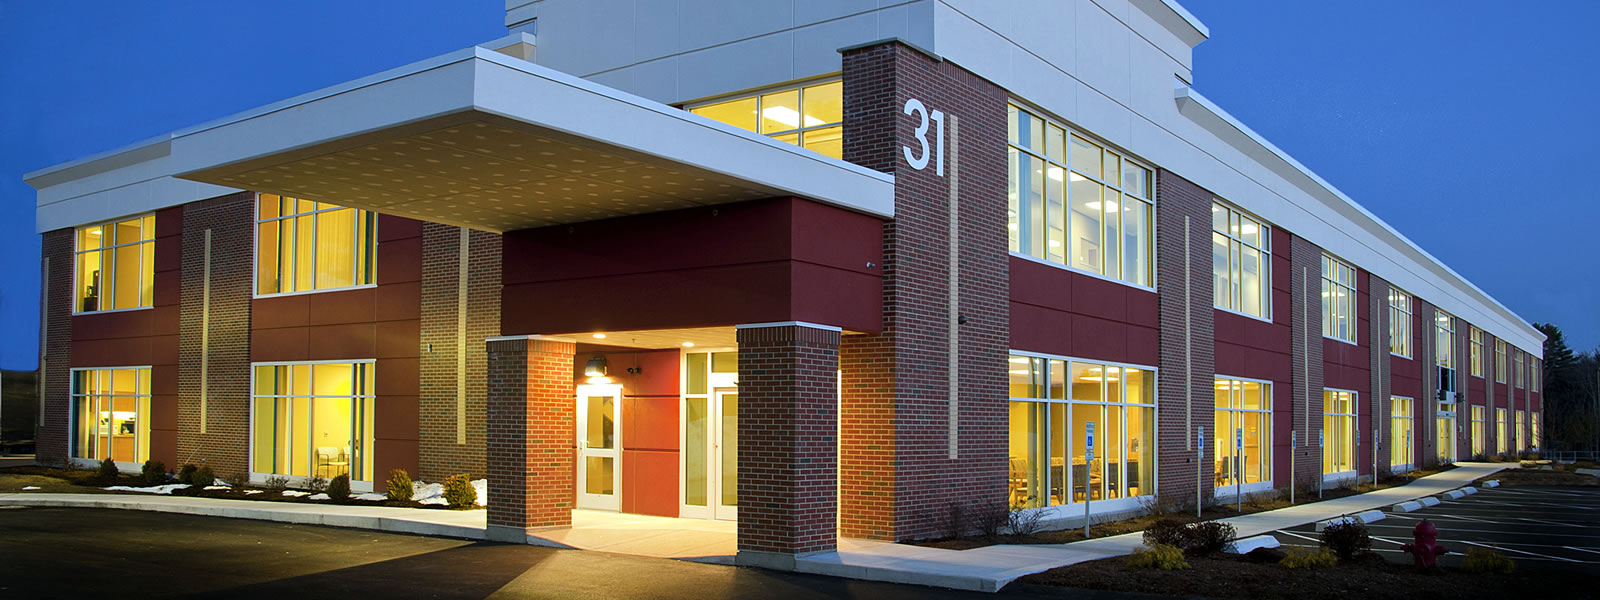 31 Stiles Medical Building